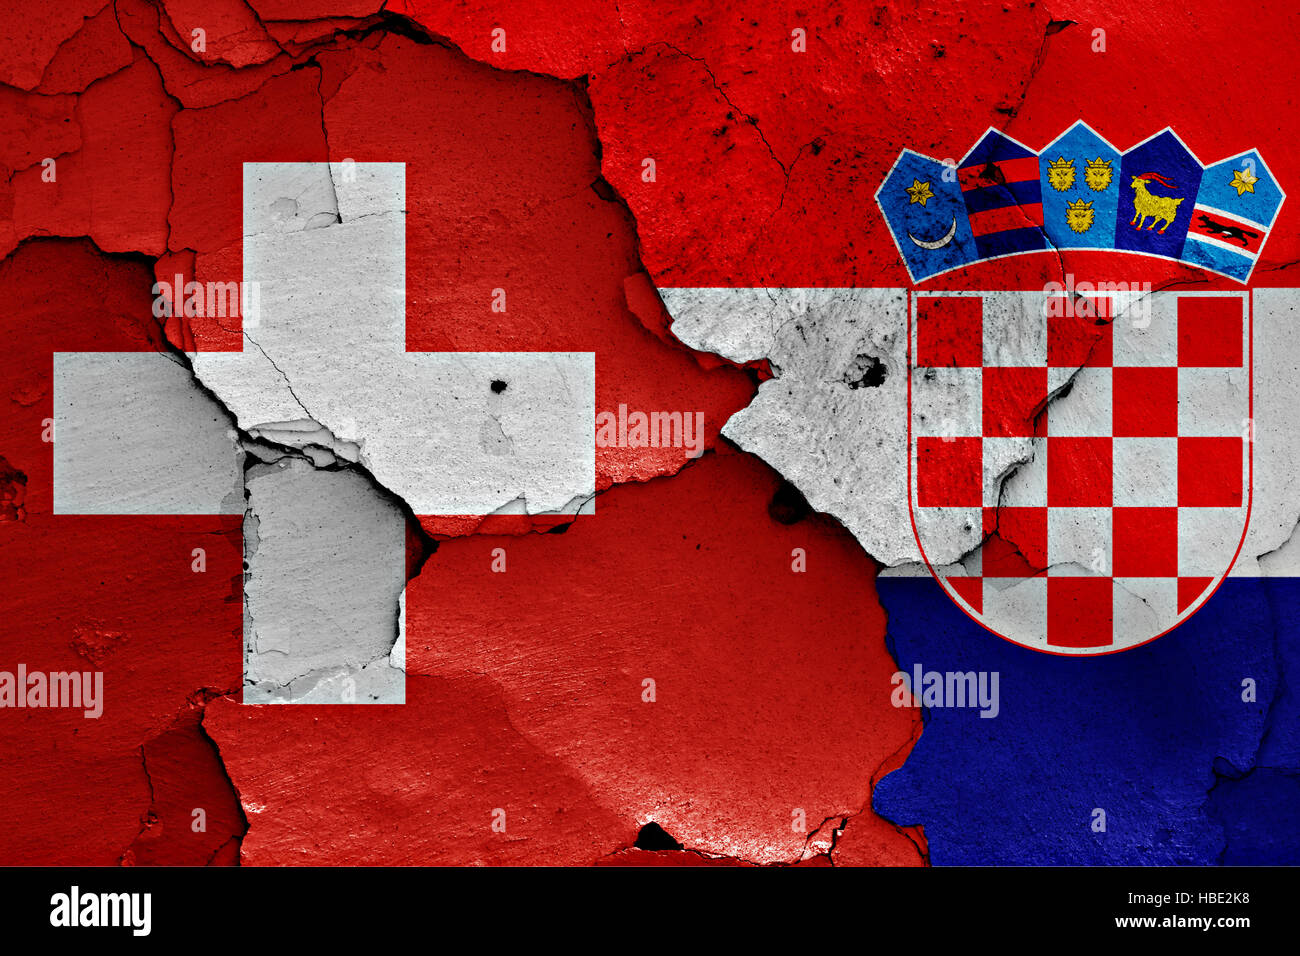 Flaggen der Schweiz und Kroatien auf rissige Wand gemalt Stockfotografie -  Alamy